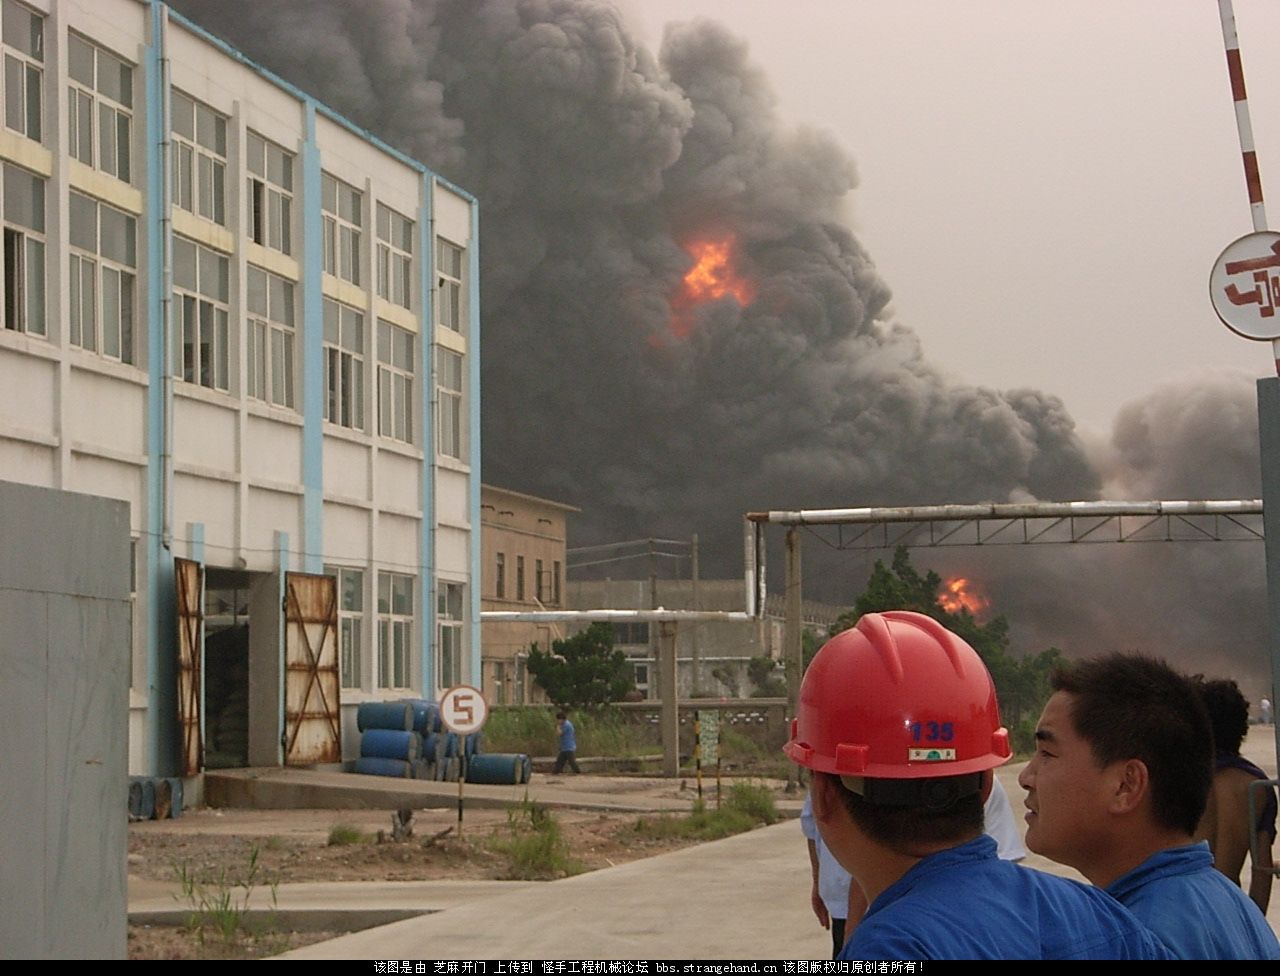 发几张工地旁边化工厂失火的照片.震撼哦!